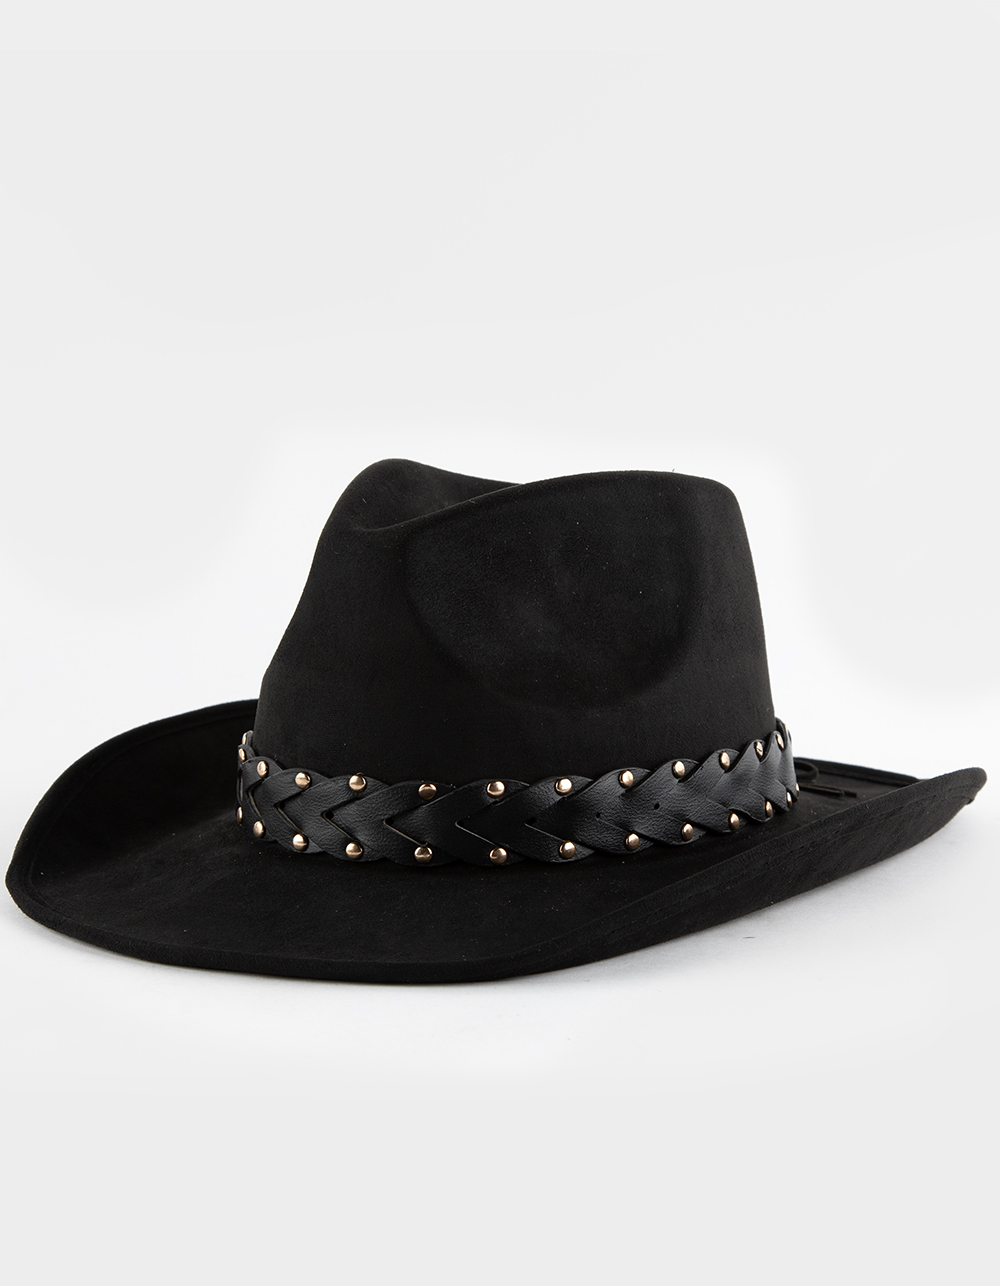 Braid Womens Cowboy Hat